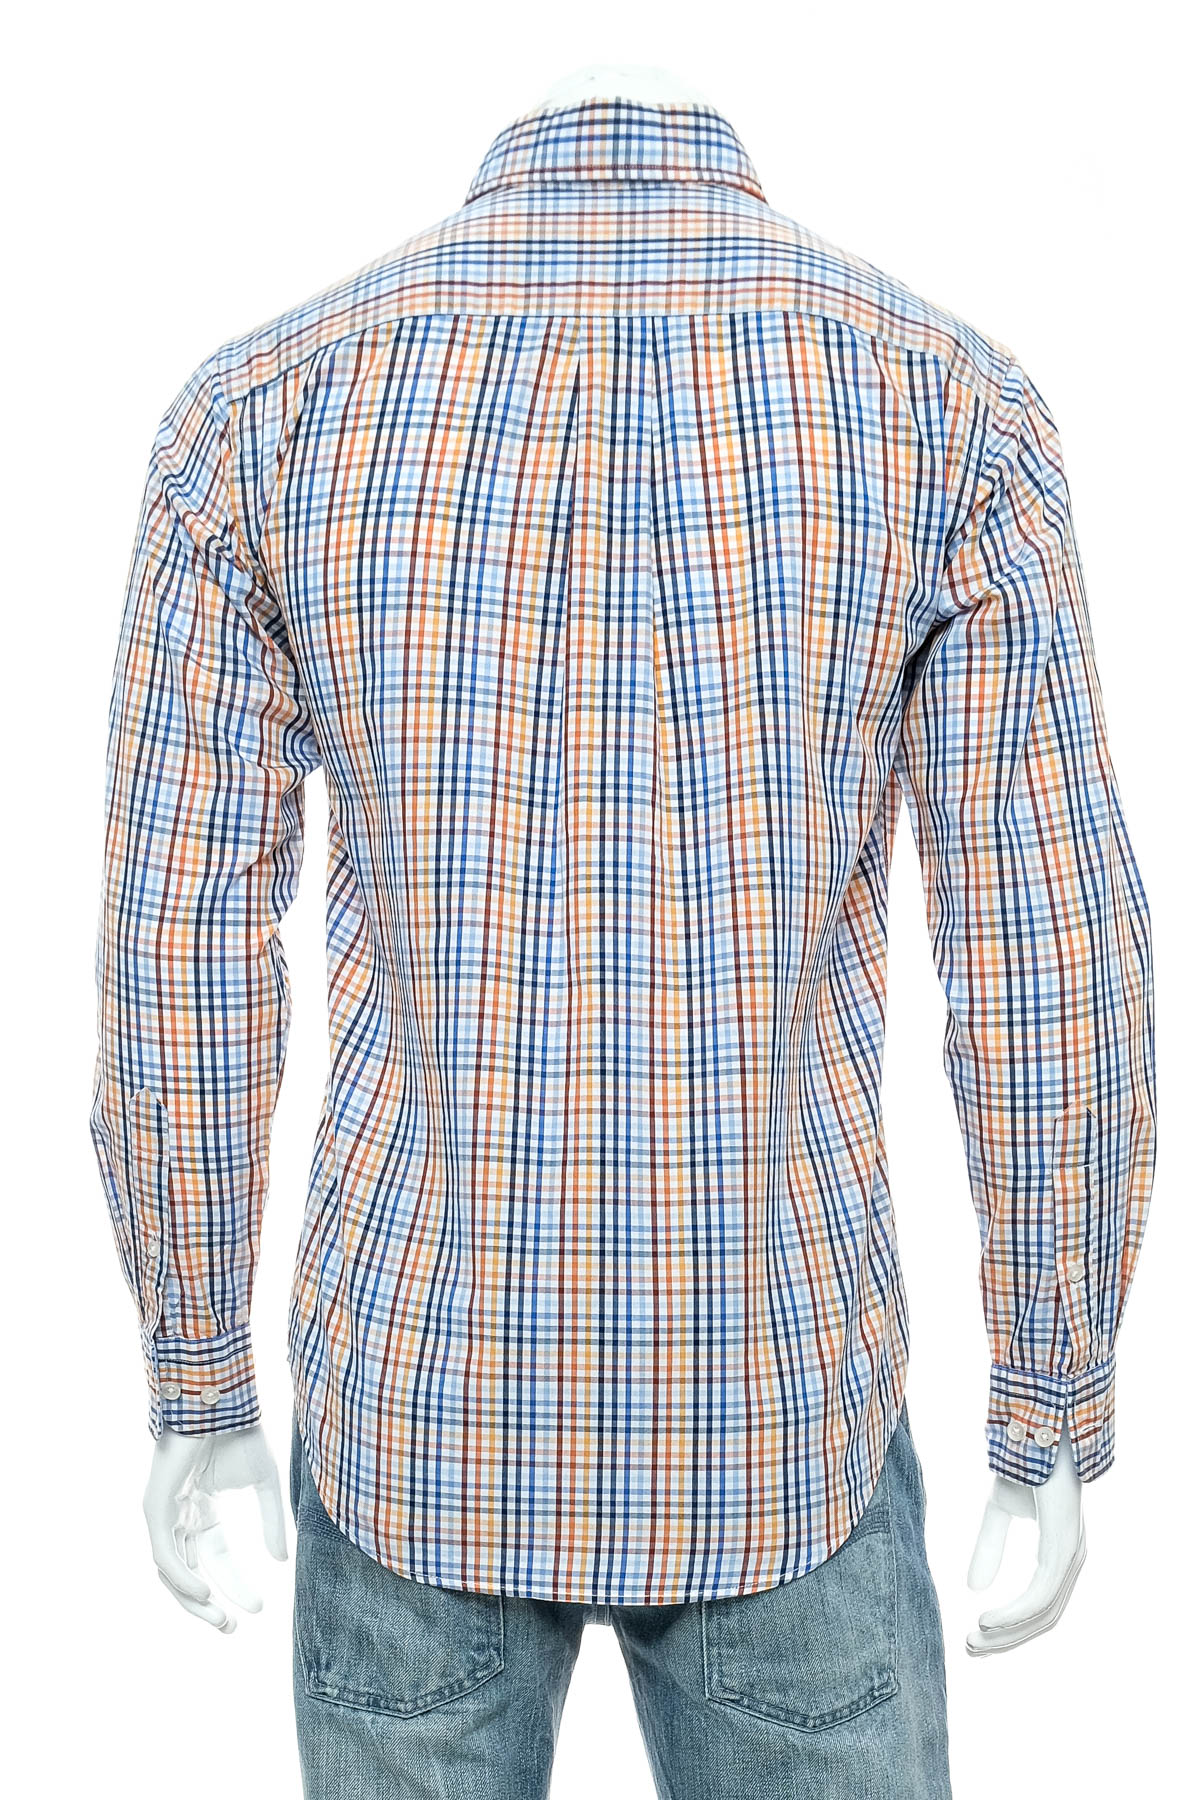 Ανδρικό πουκάμισο - Fynch Hatton - 1